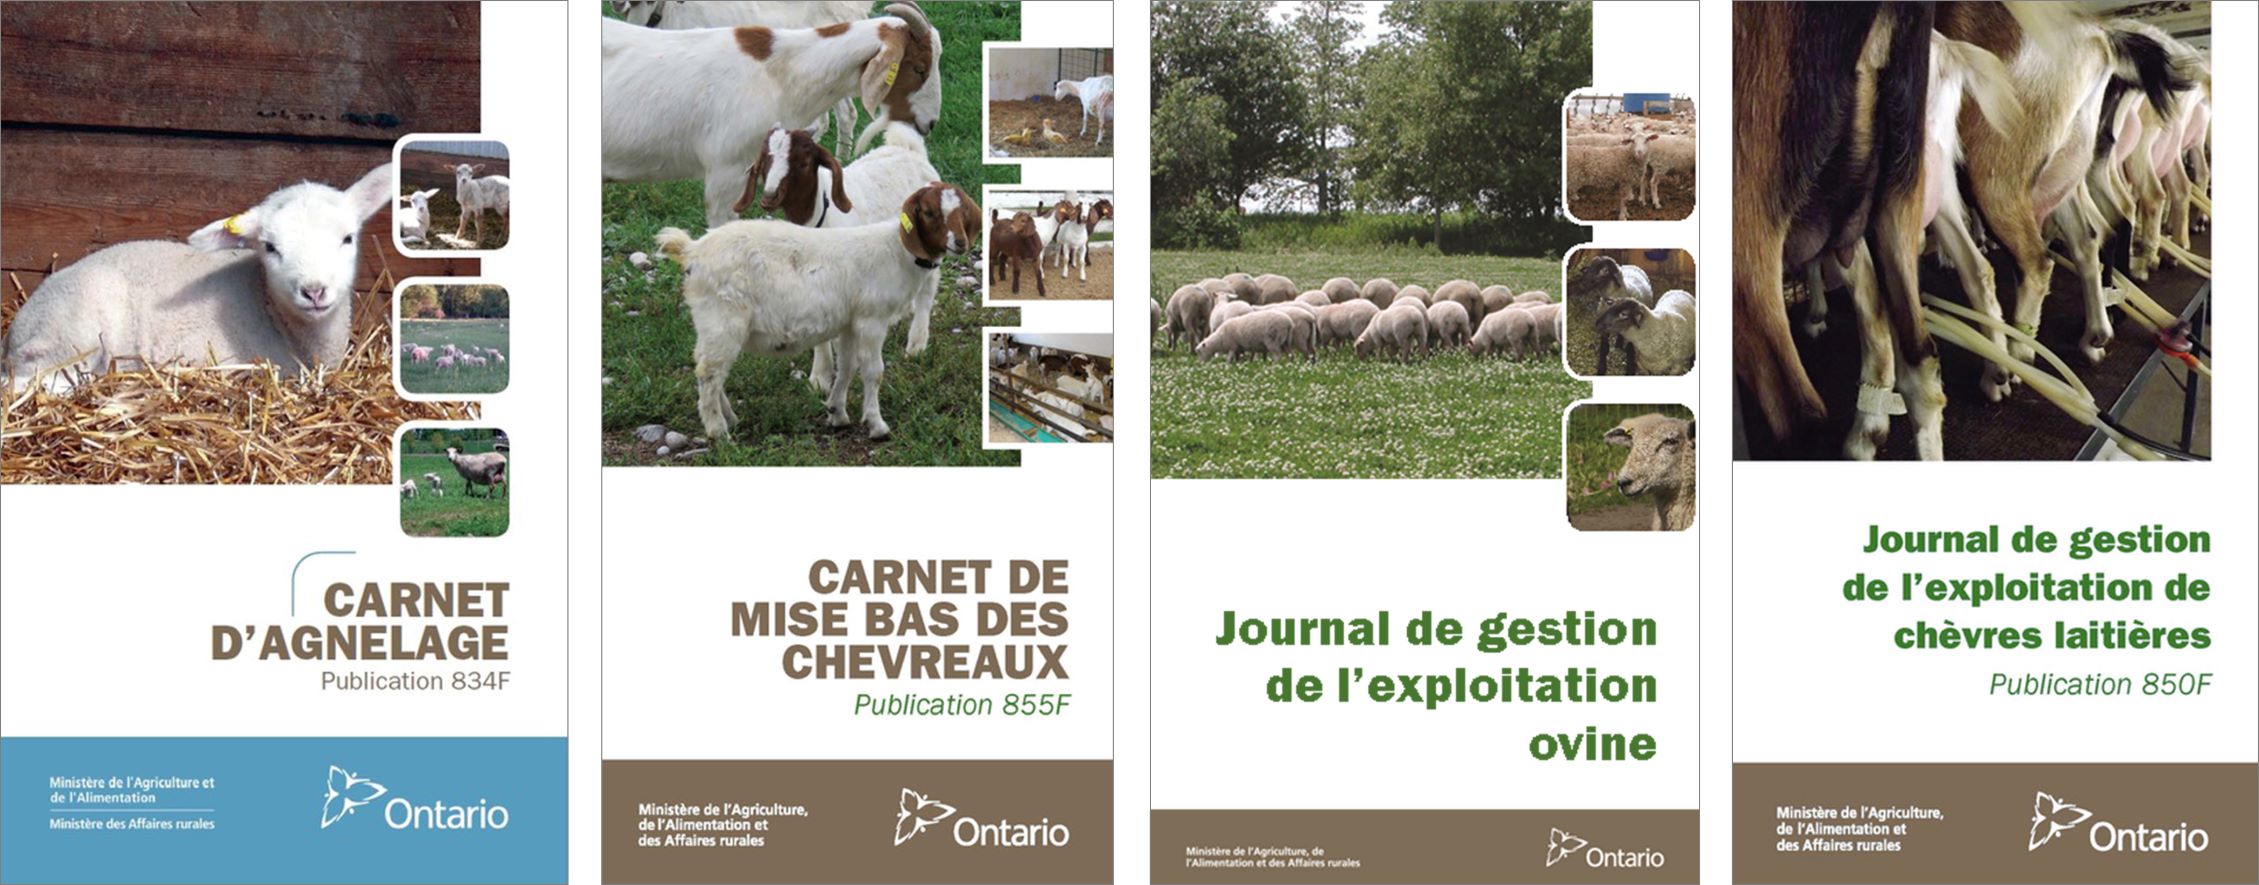 Couvertures de publications : Carnet d’agnelage, Carnet de mise bas des chevreaux, Journal de gestion de l’exploitation ovine et Journal de gestion de l’exploitation de chèvres laitières.